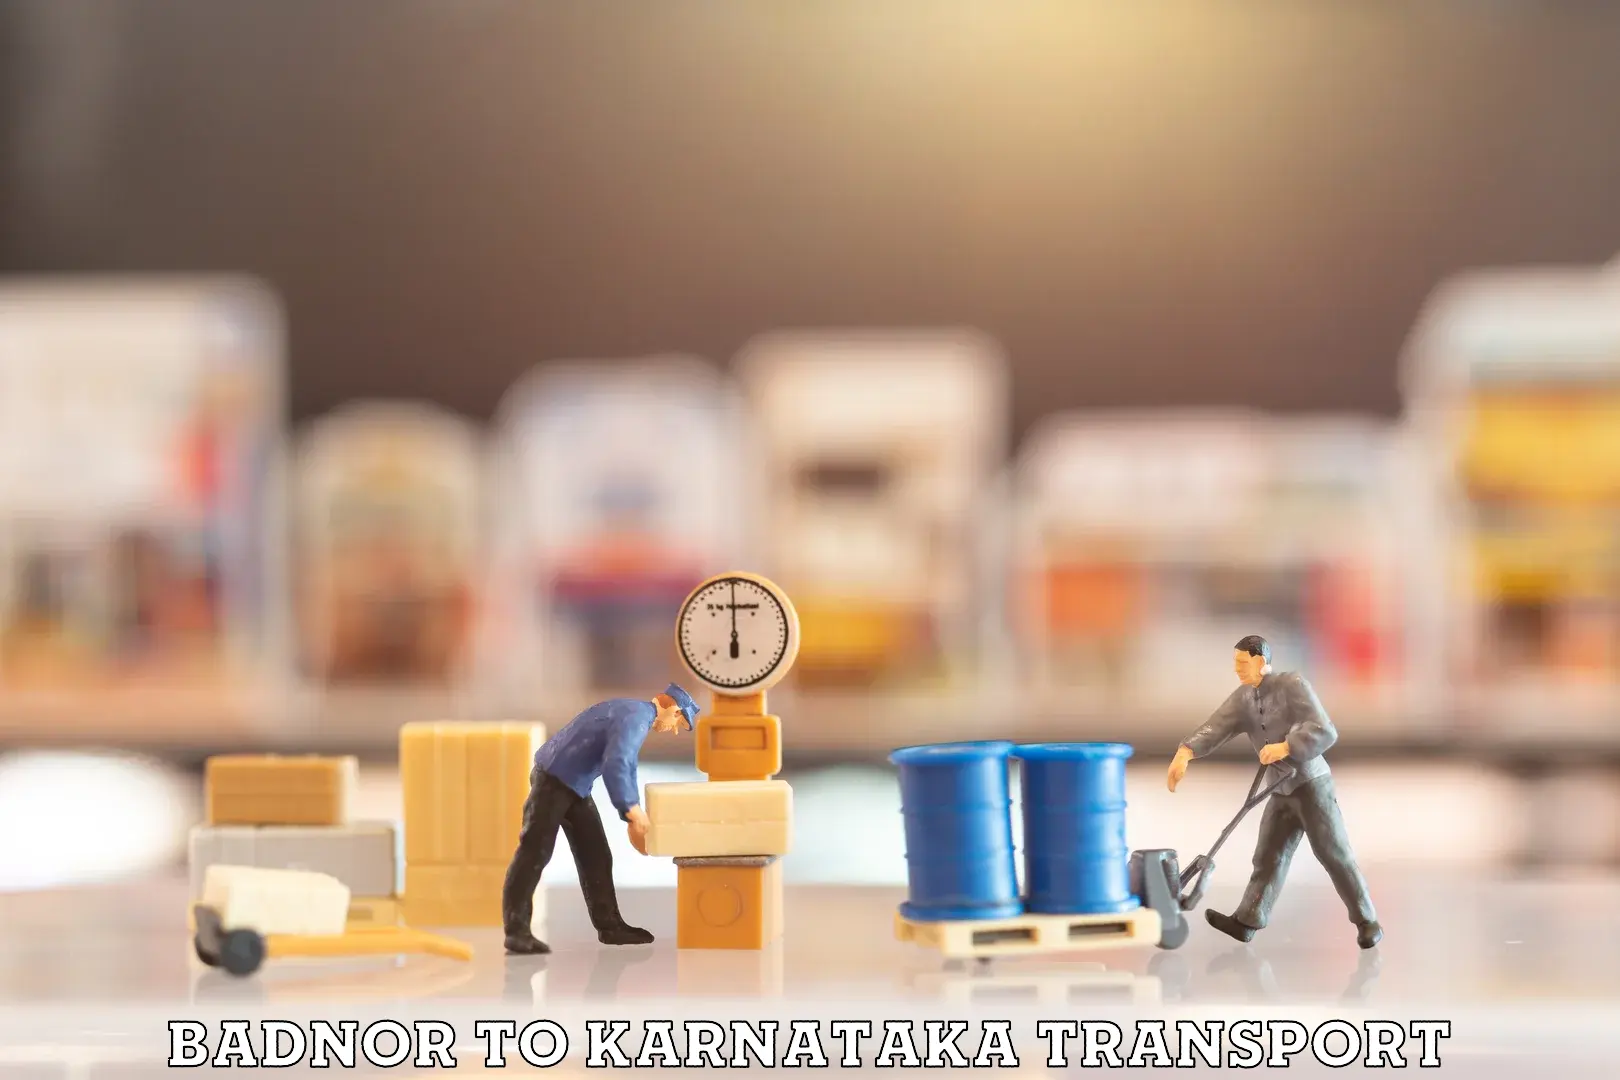 Transport in sharing Badnor to Chikkanayakanahalli